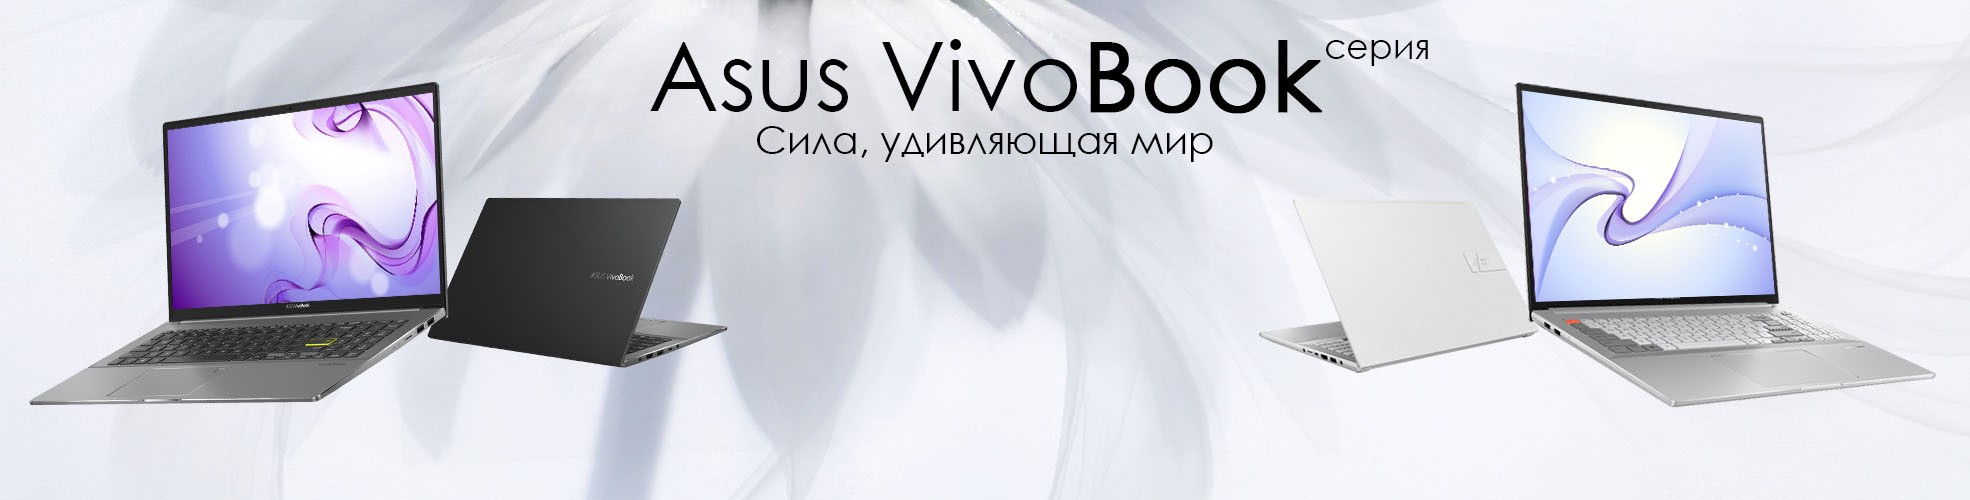 Asus Vivobook в Ташкенте Купить в Узбекистане по Лучшим ценам